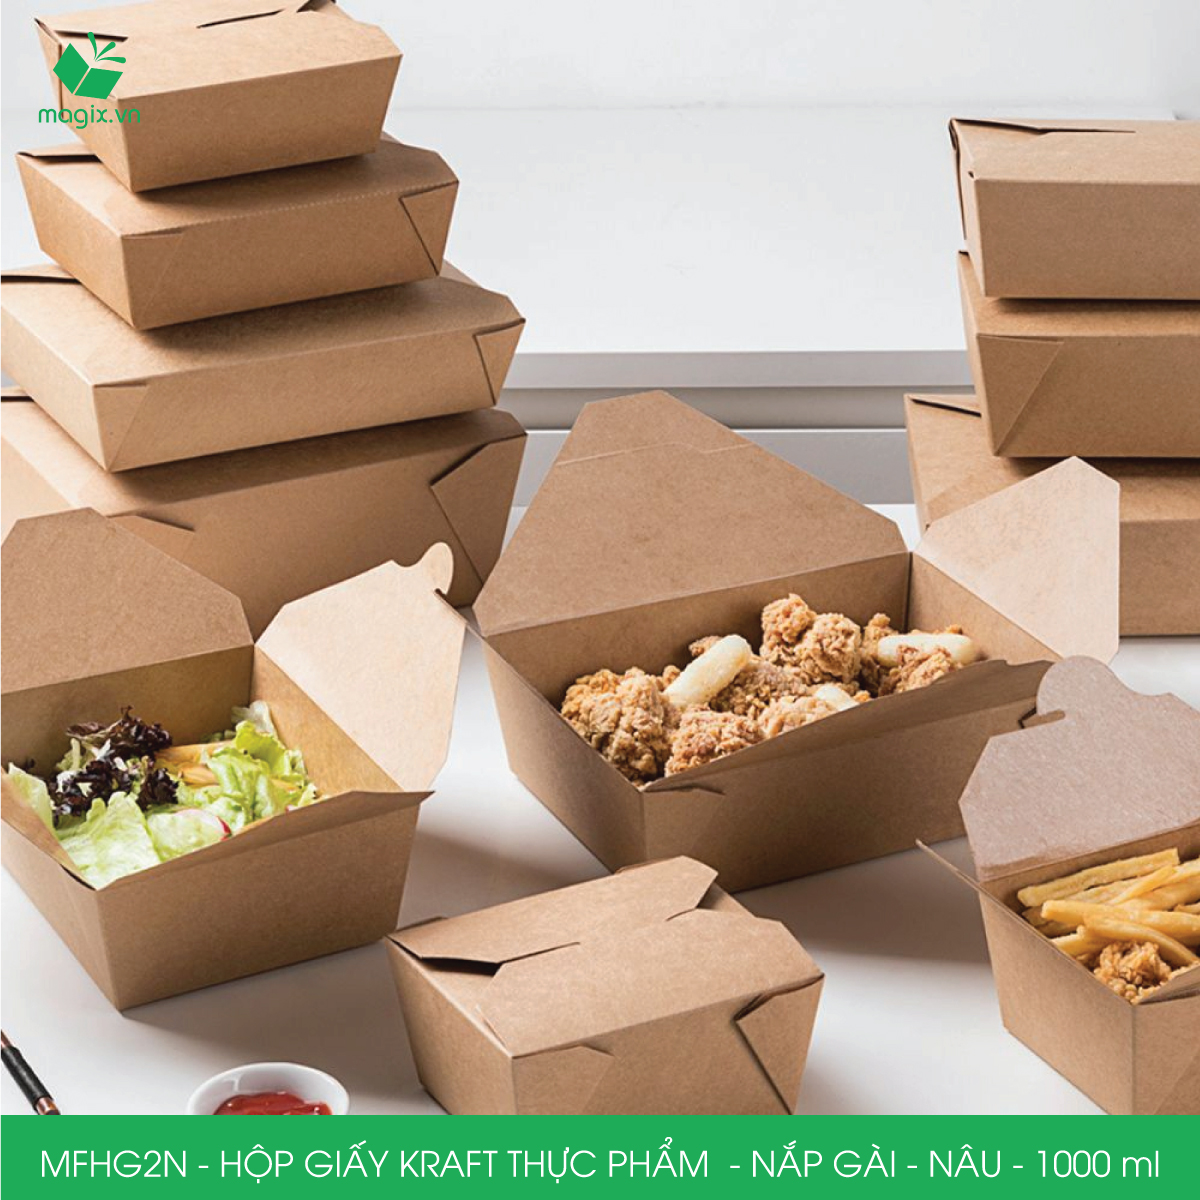 MFHG2N - 50 hộp giấy kraft thực phẩm 1000ml, hộp giấy nắp gập màu nâu đựng thức ăn, hộp giấy nắp gài gói đồ ăn mang đi 